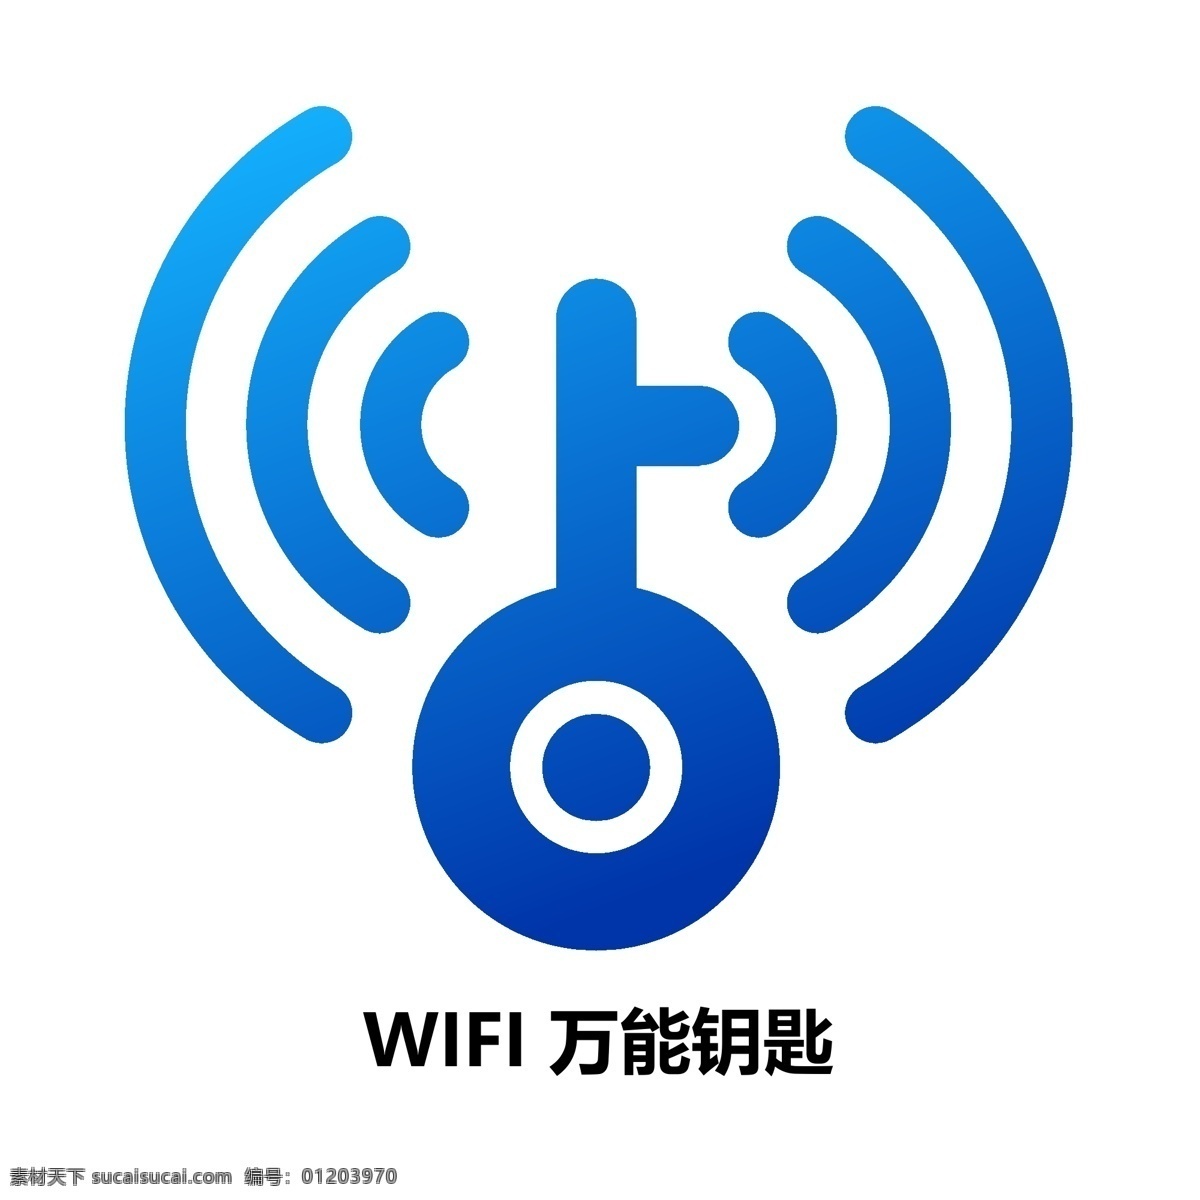 免费上网 工具 wifi 万能 钥匙 logo 免费上网工具 云计算技术 网络热点 分享 无线网络 连接